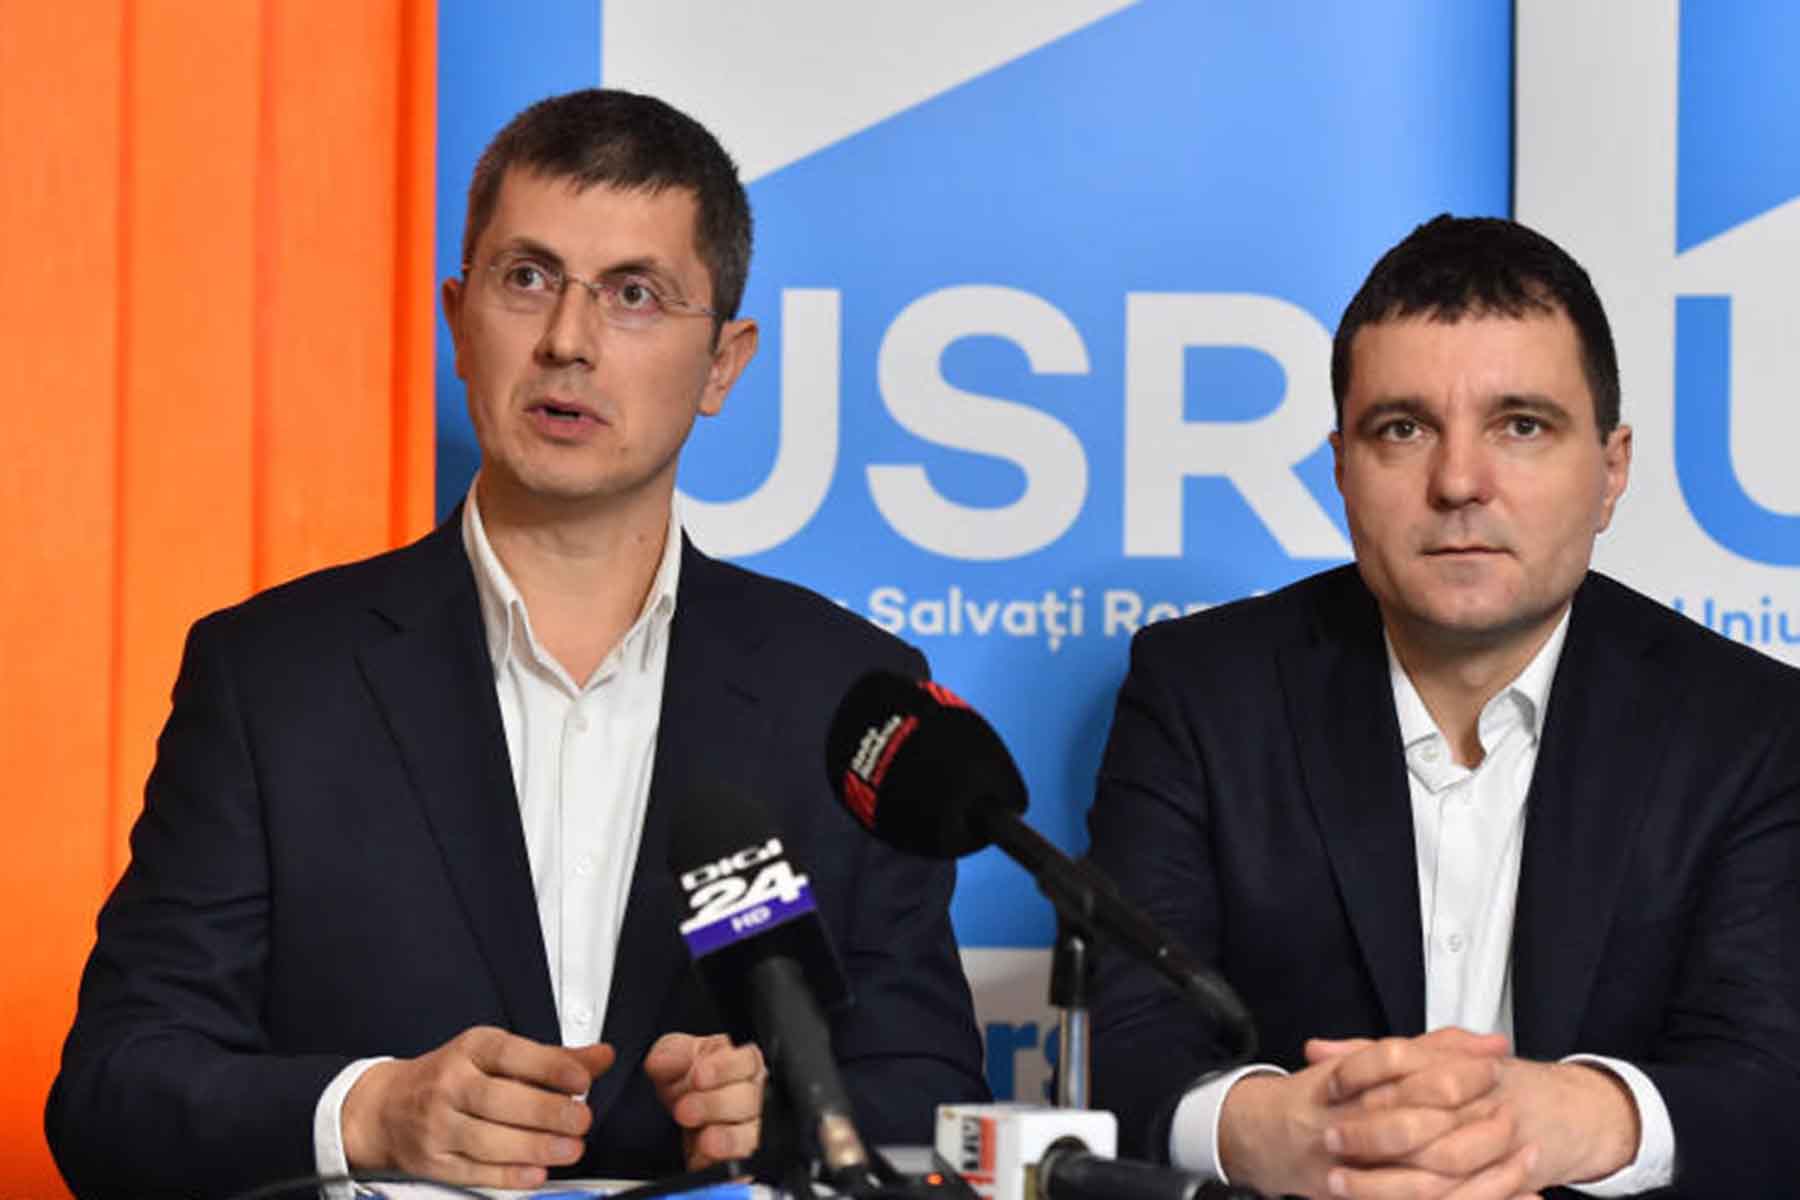 Orgoliile politicienilor au început să apară: Barna și Vlad Voiculescu îl sabotează pe Nicușor Dan